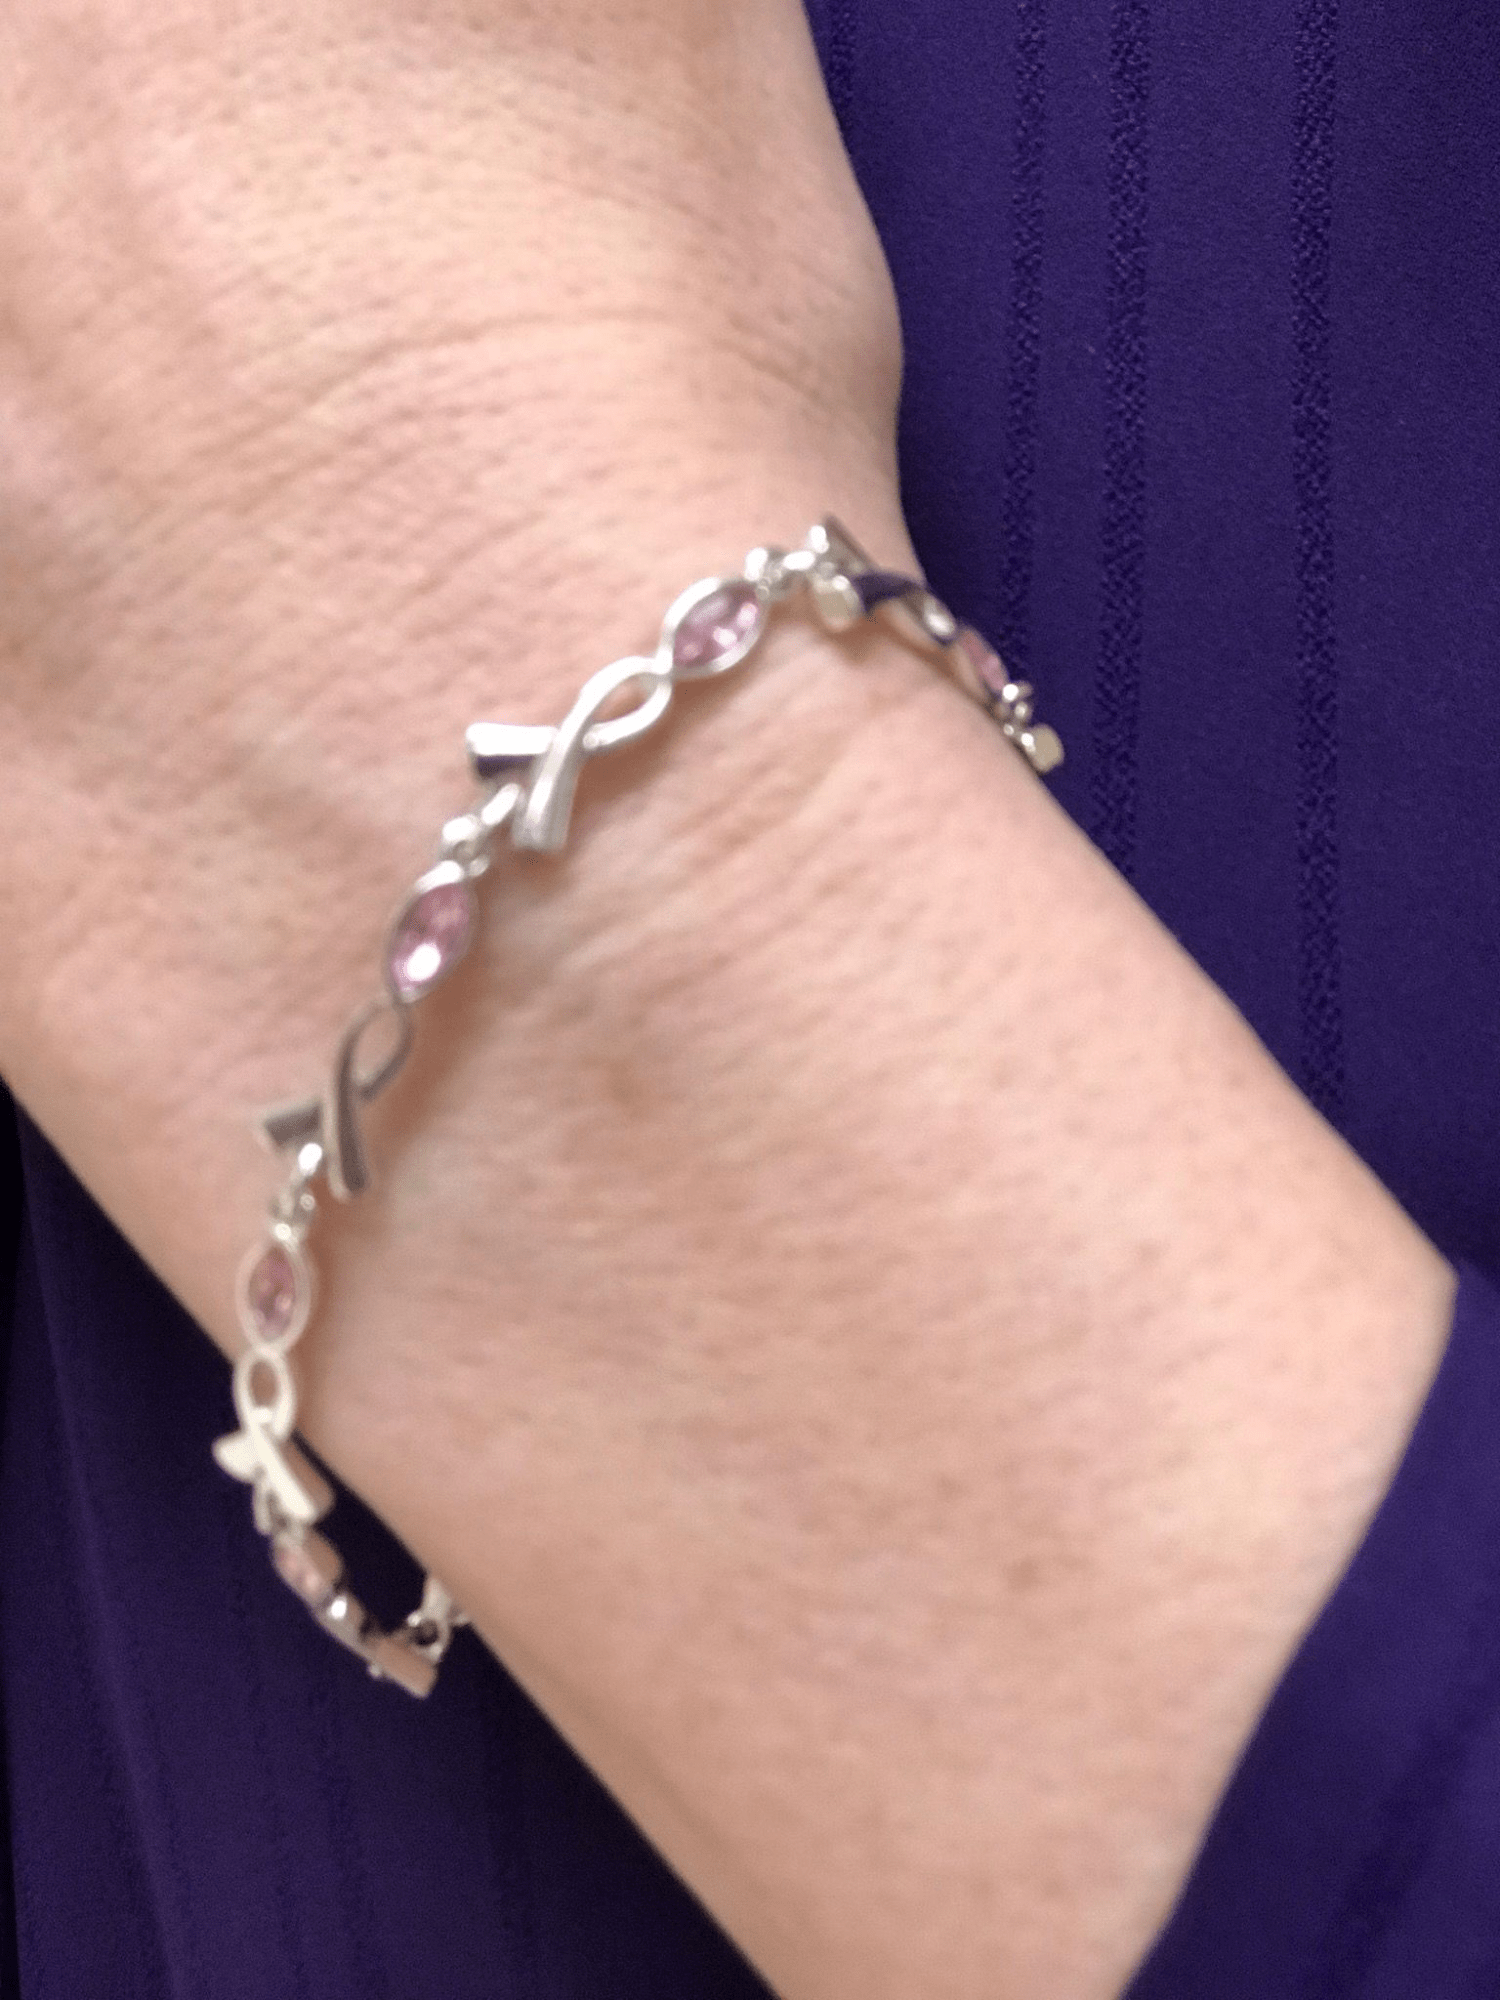 April wears a breast cancer awareness bracelet.